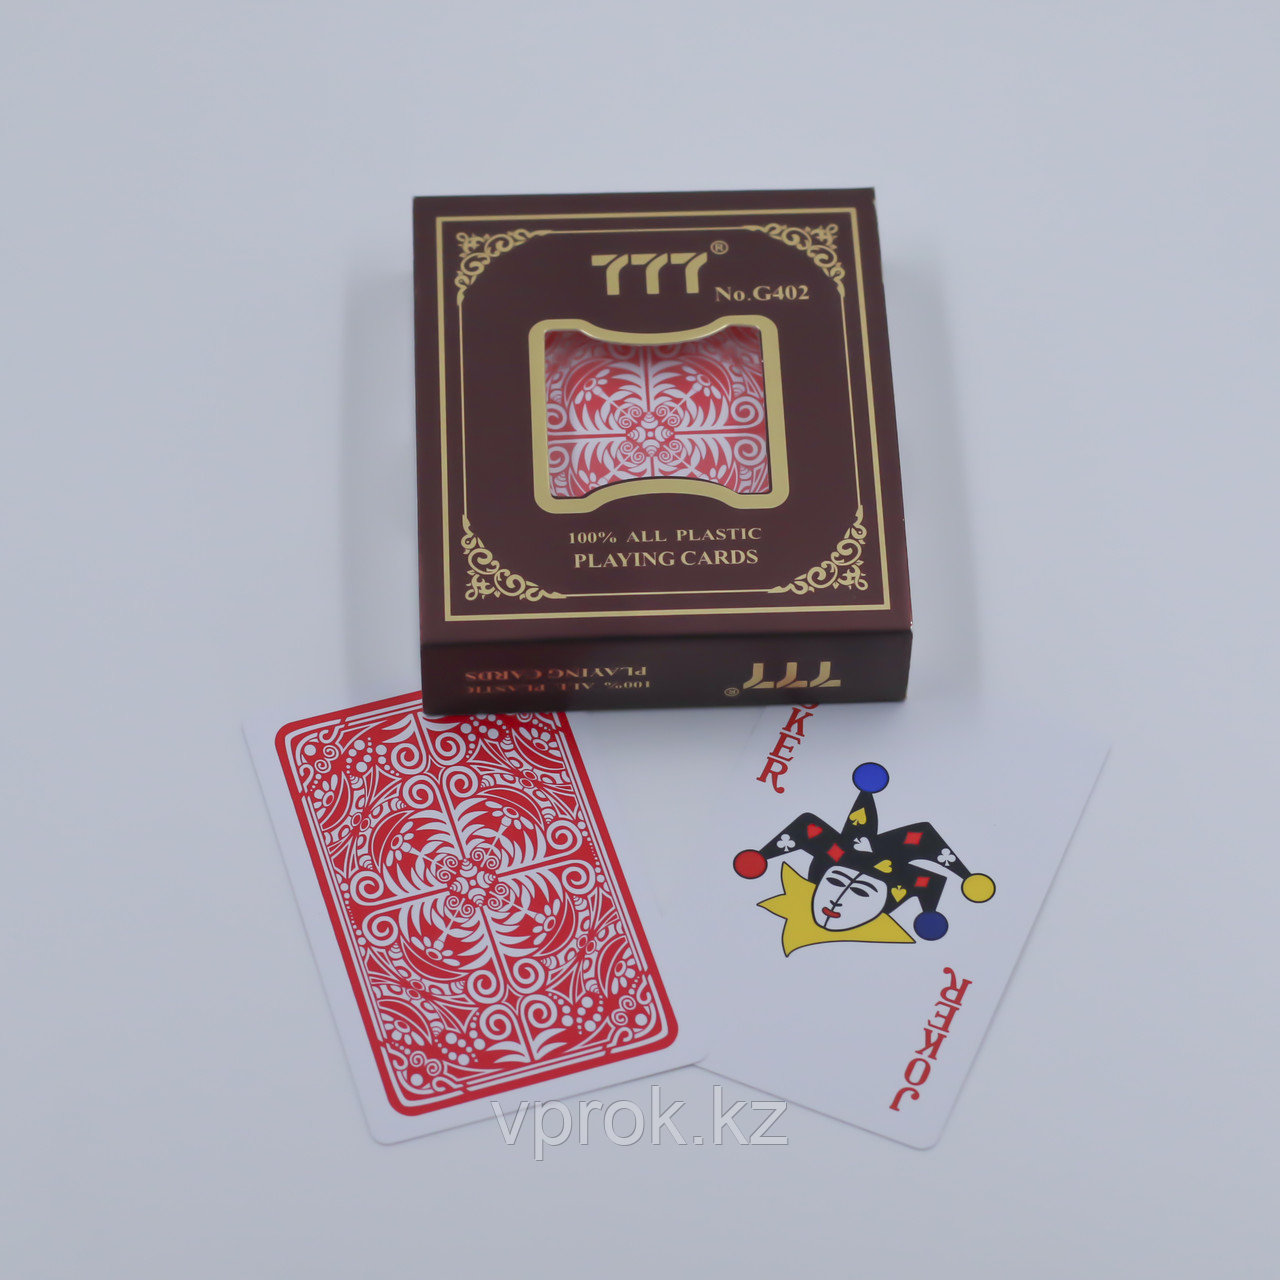 Покерные игральные карты 54 шт. 777 G402, пластик 100%